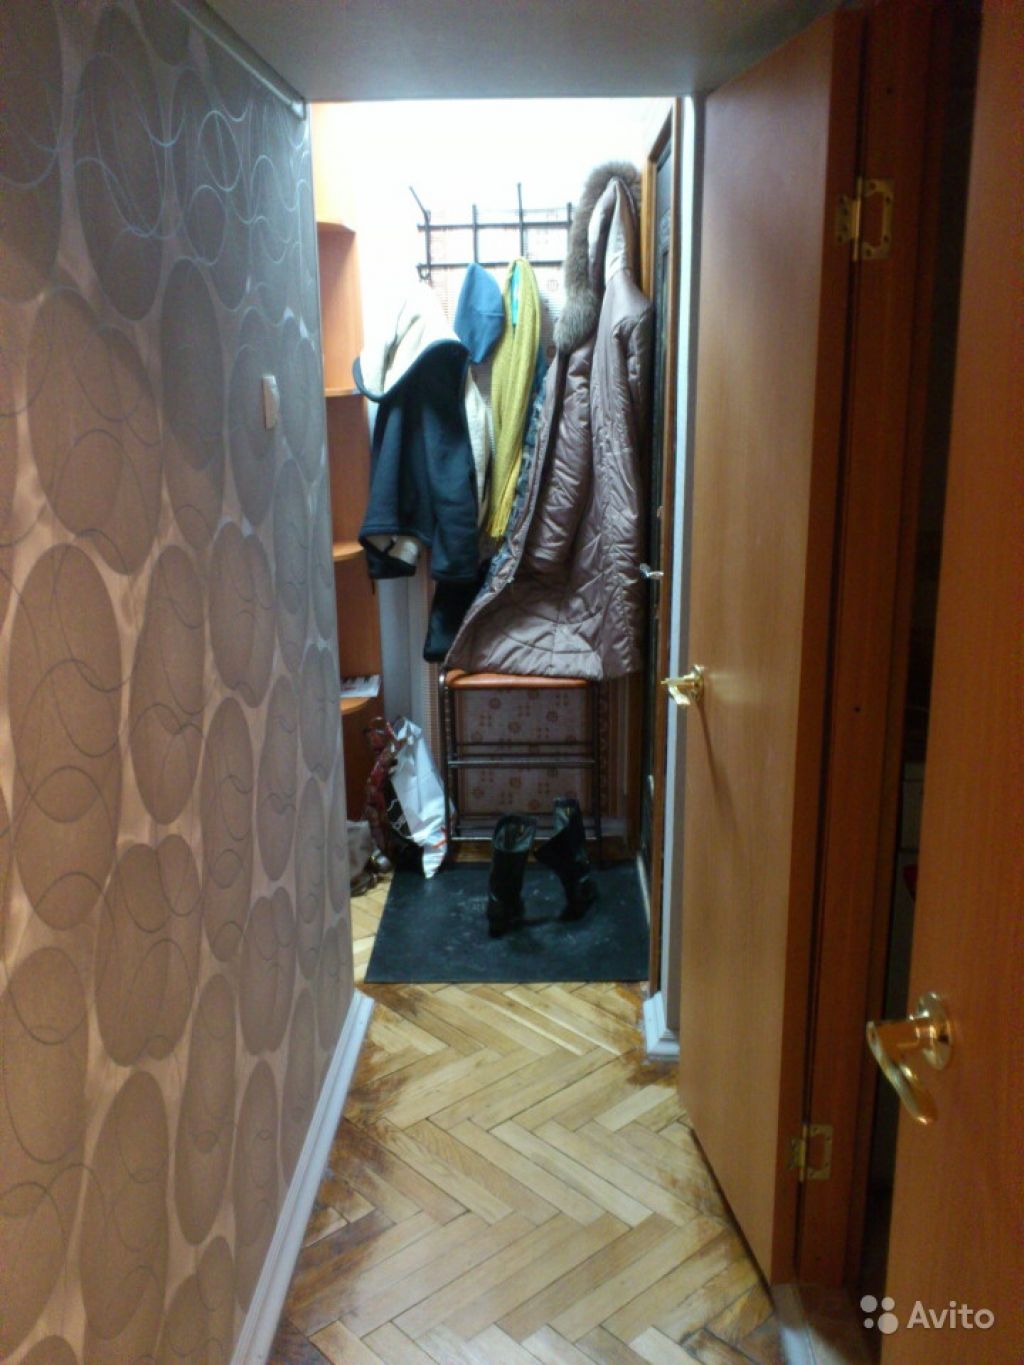 Сдам квартиру 3-к квартира 50 м² на 3 этаже 9-этажного панельного дома в Москве. Фото 1